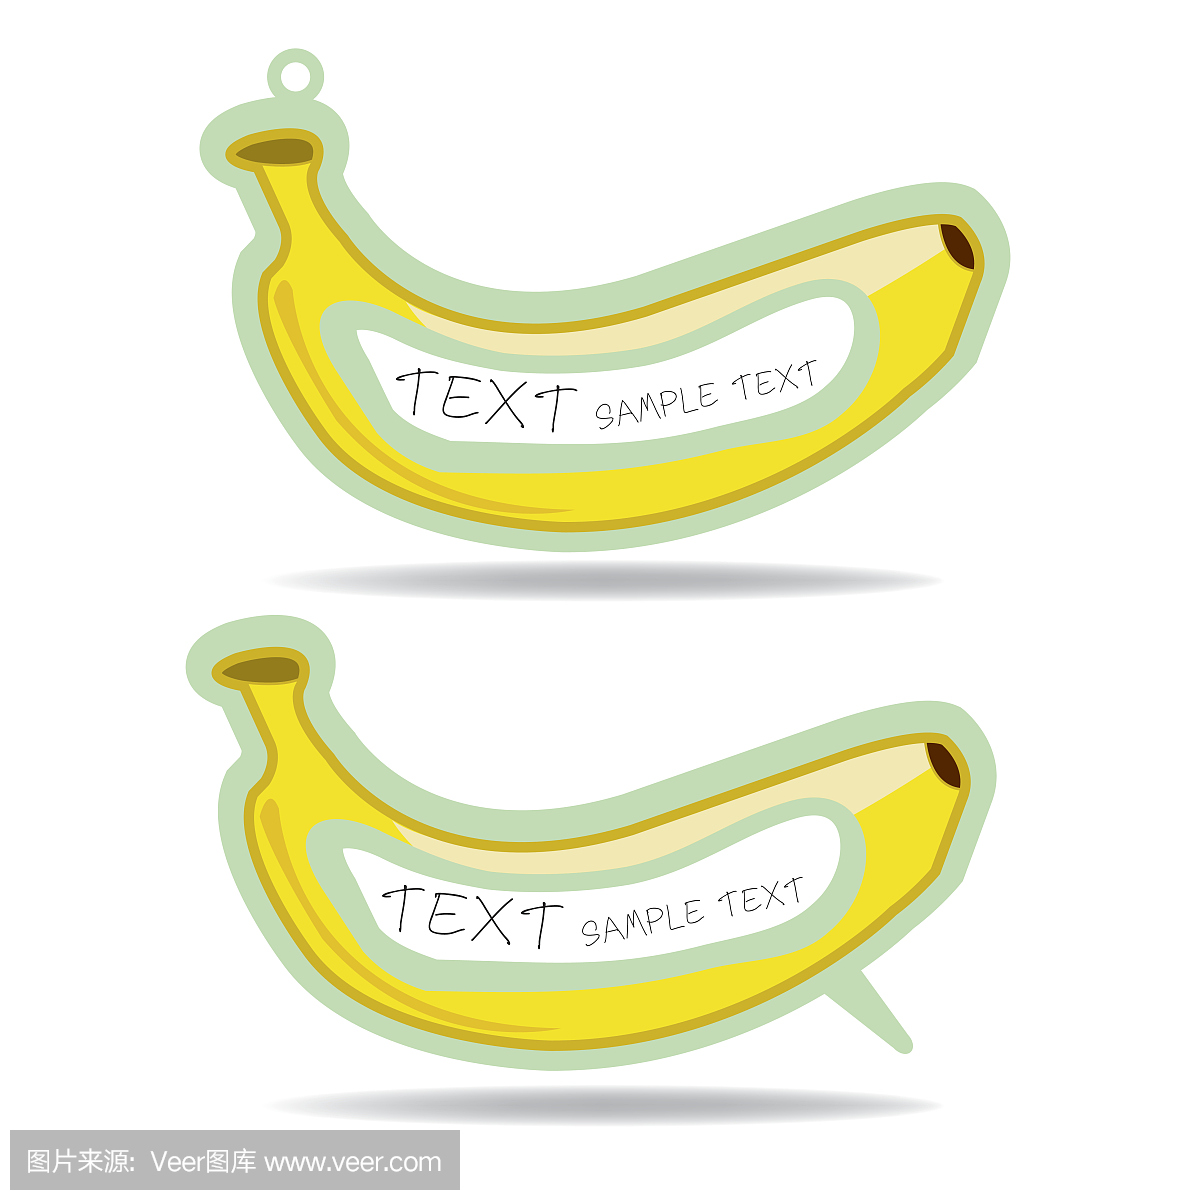 香蕉水果讲话泡沫和价格标签矢量